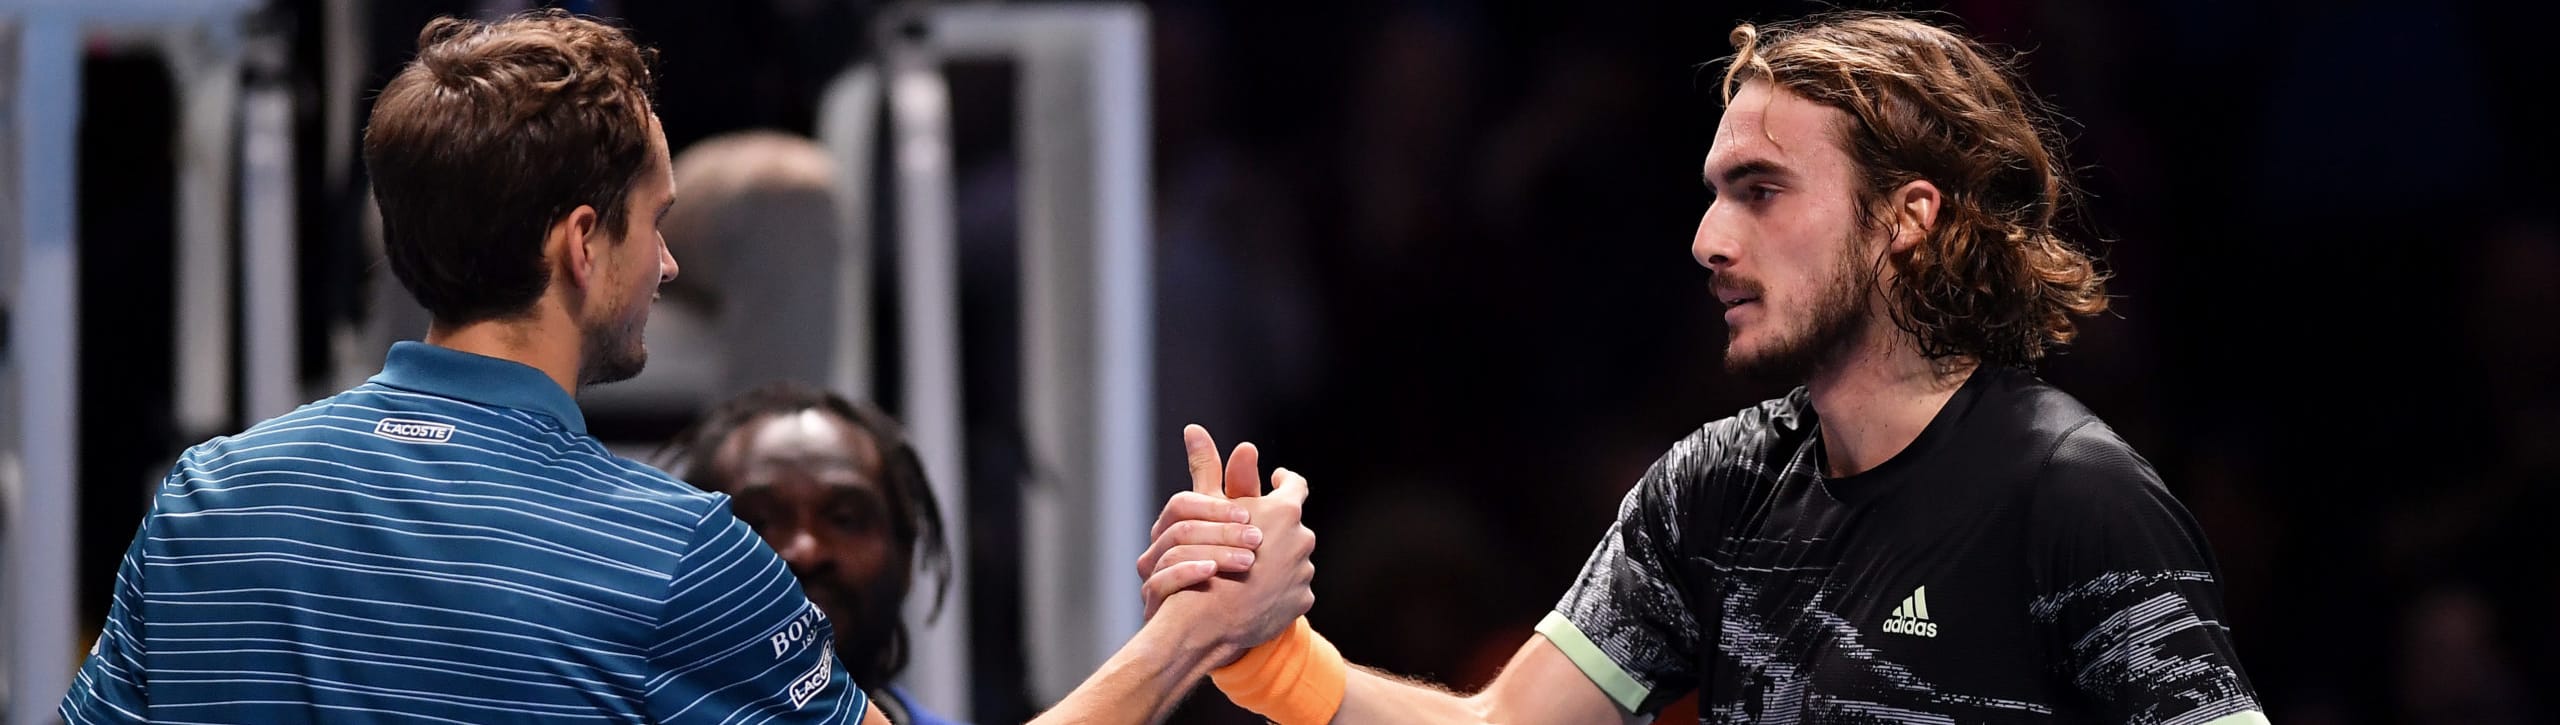 Pronostici Australian Open: Medvedev-Tsitsipas, chi sfiderà Nole?